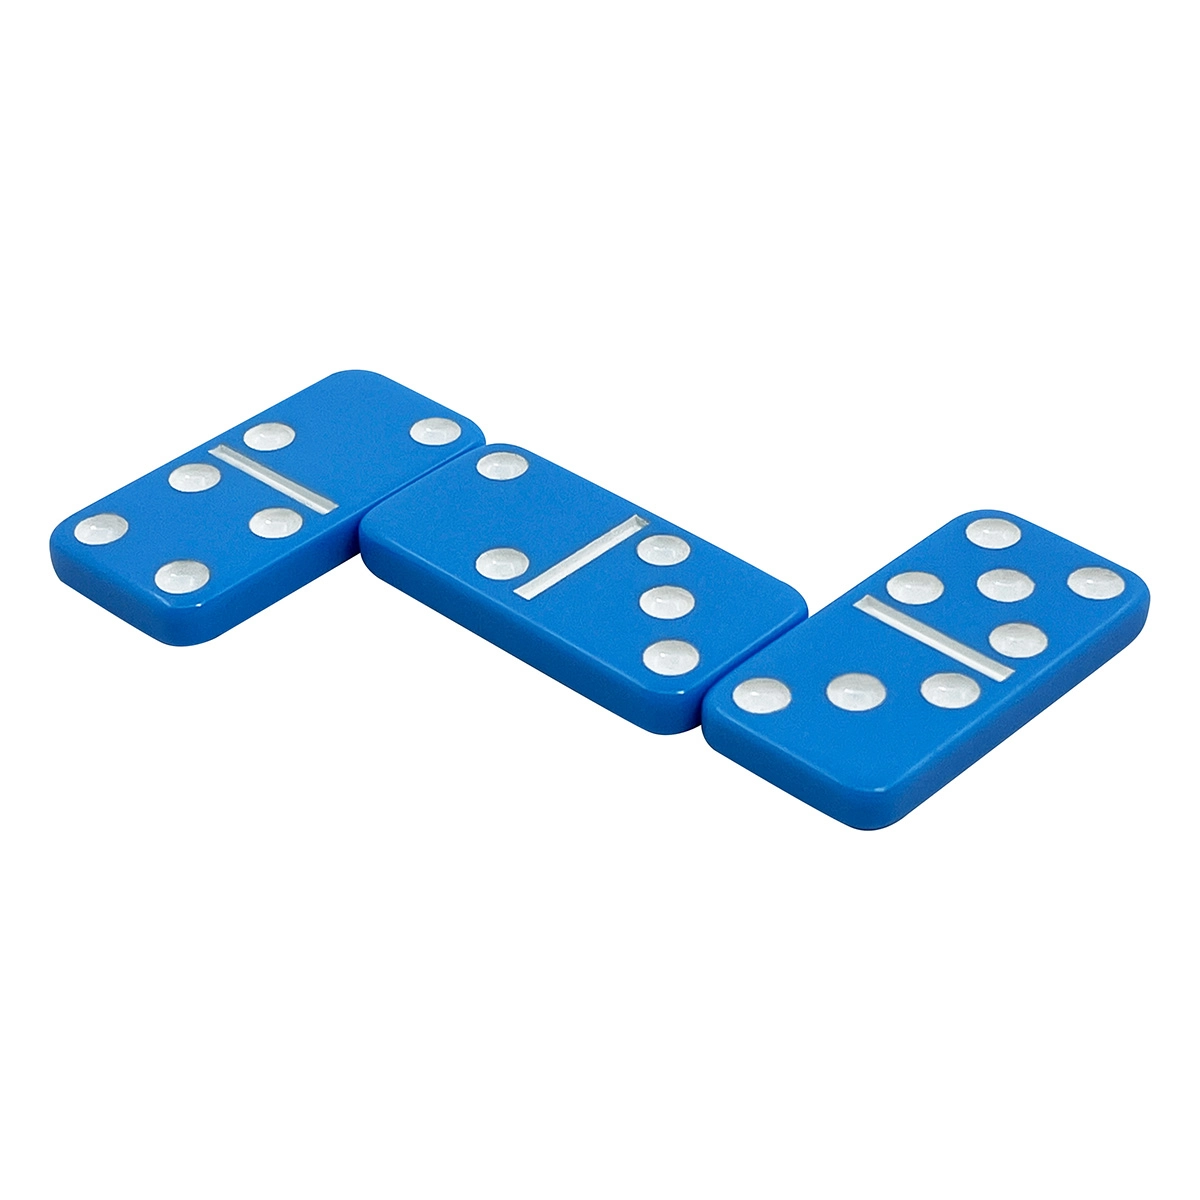 Peças de dominó coloridas personalizadas